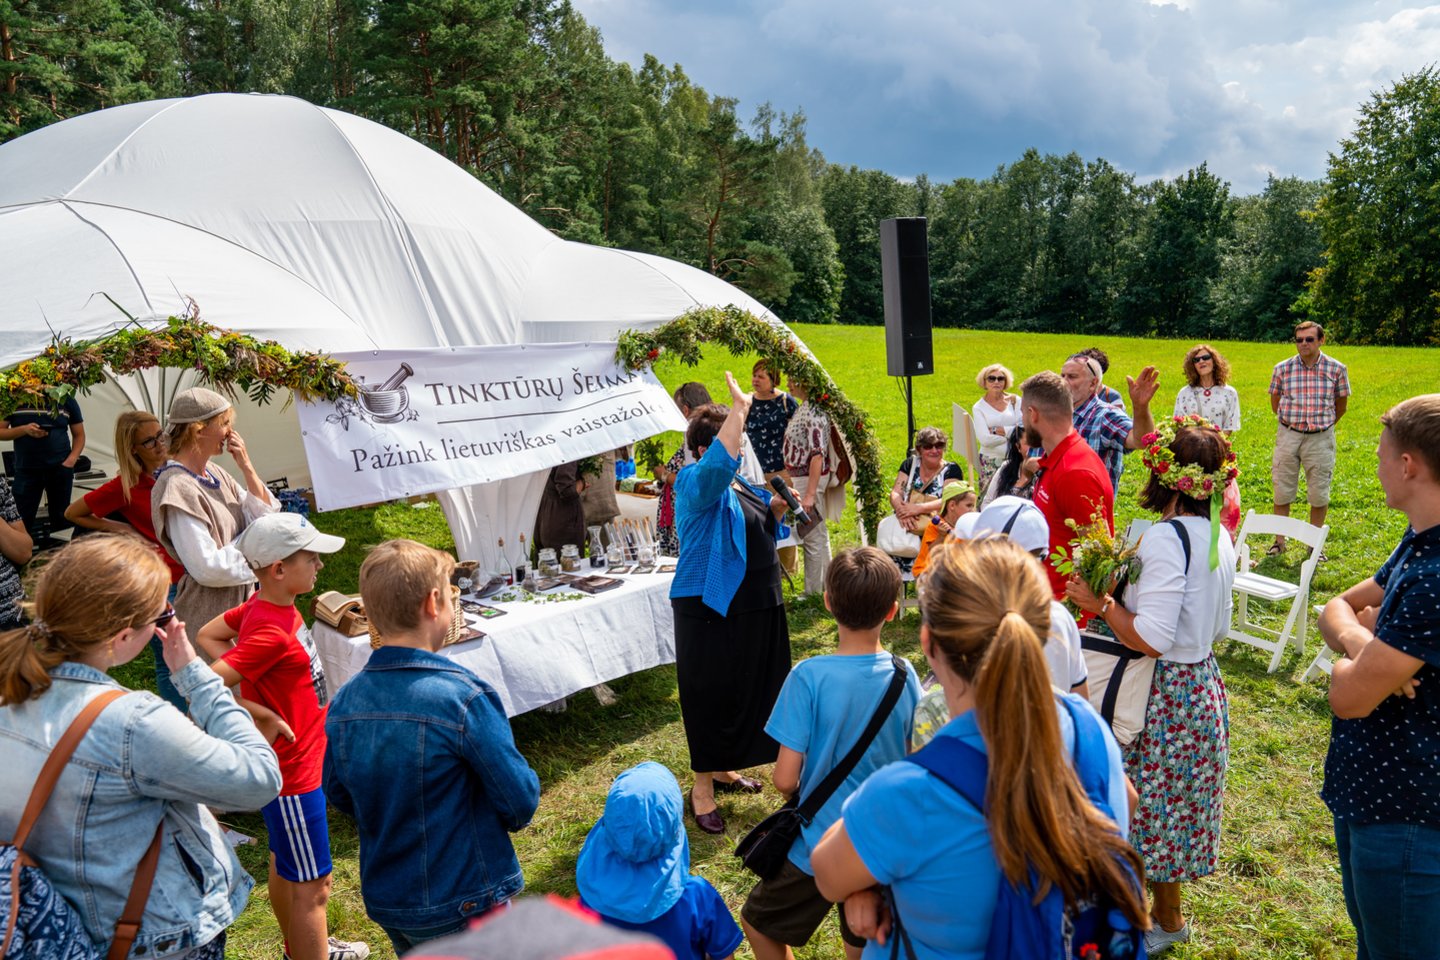  Šventės „Pažink lietuviškas vaistažoles“ akimirkos.<br> Organizatorių nuotr. 